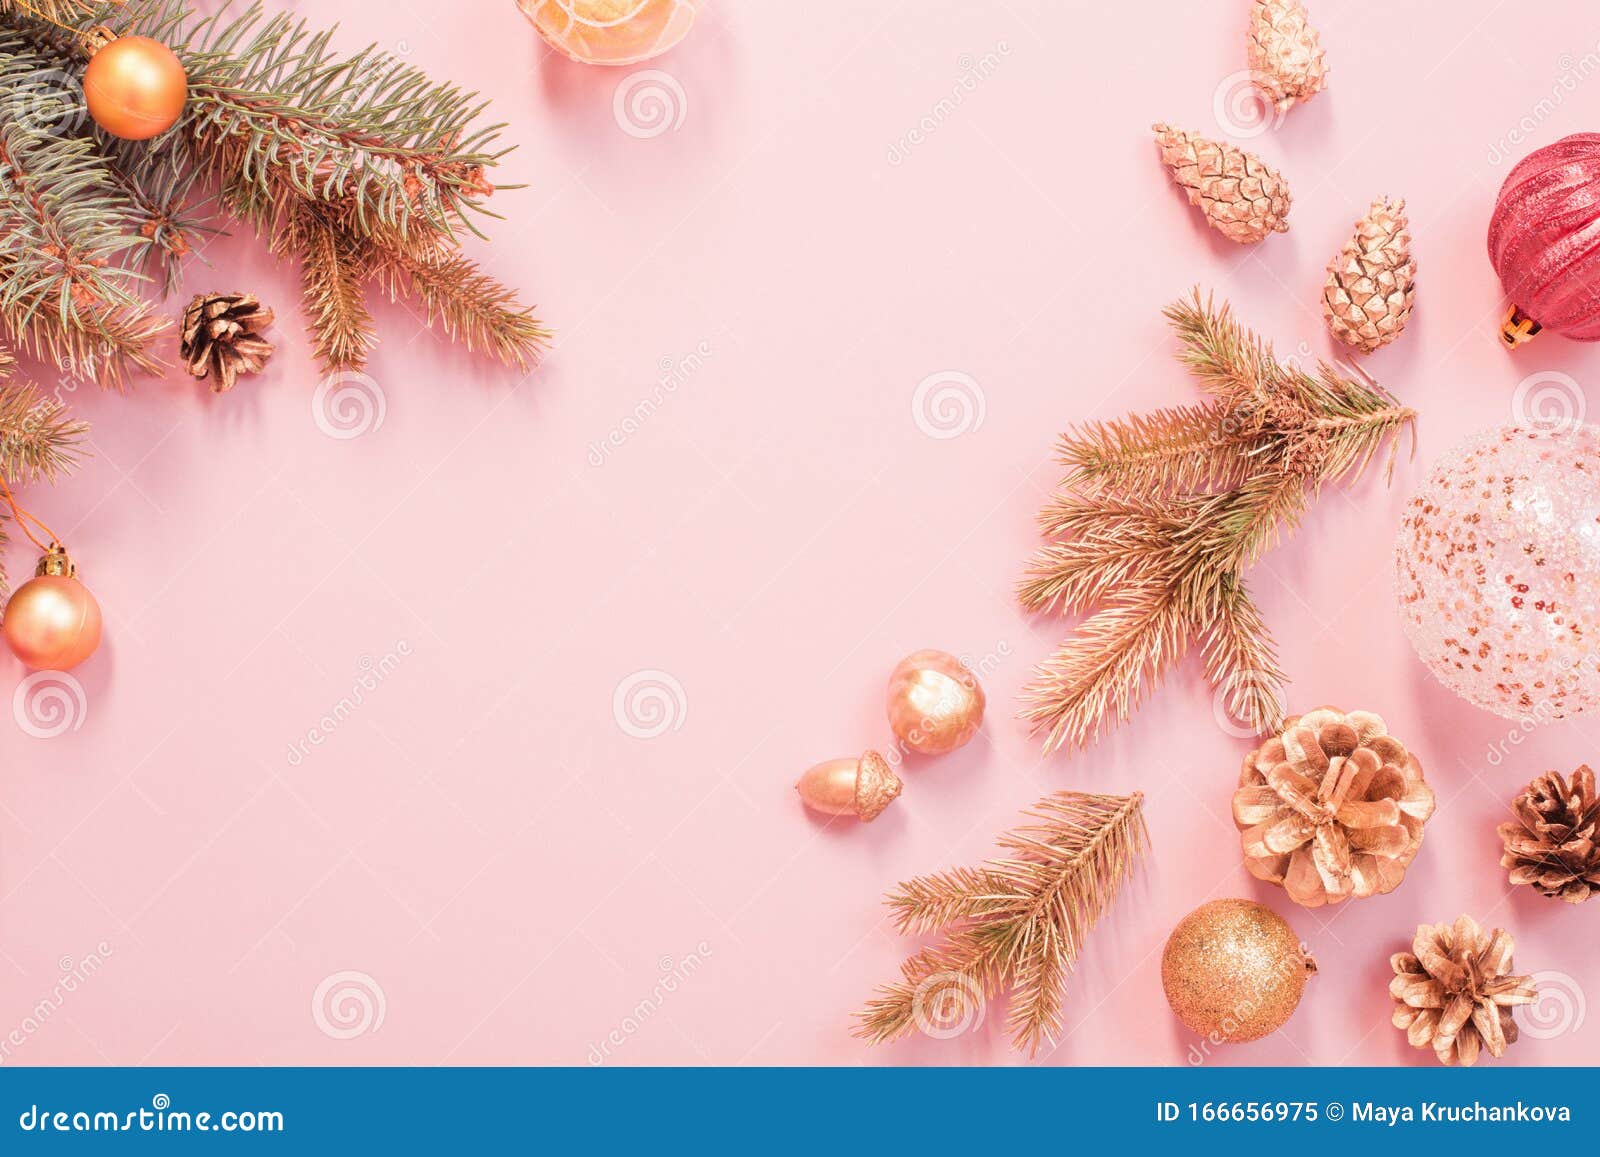 Hãy thưởng thức hình nền Giáng sinh hiện đại với sự kết hợp hoàn hảo giữa màu hồng và màu vàng sẽ mang lại một không gian trang trí Noel mới lạ và đầy phong cách. Nhấn vào hình liên quan để đến với thế giới Giáng sinh đầy màu sắc nhé!